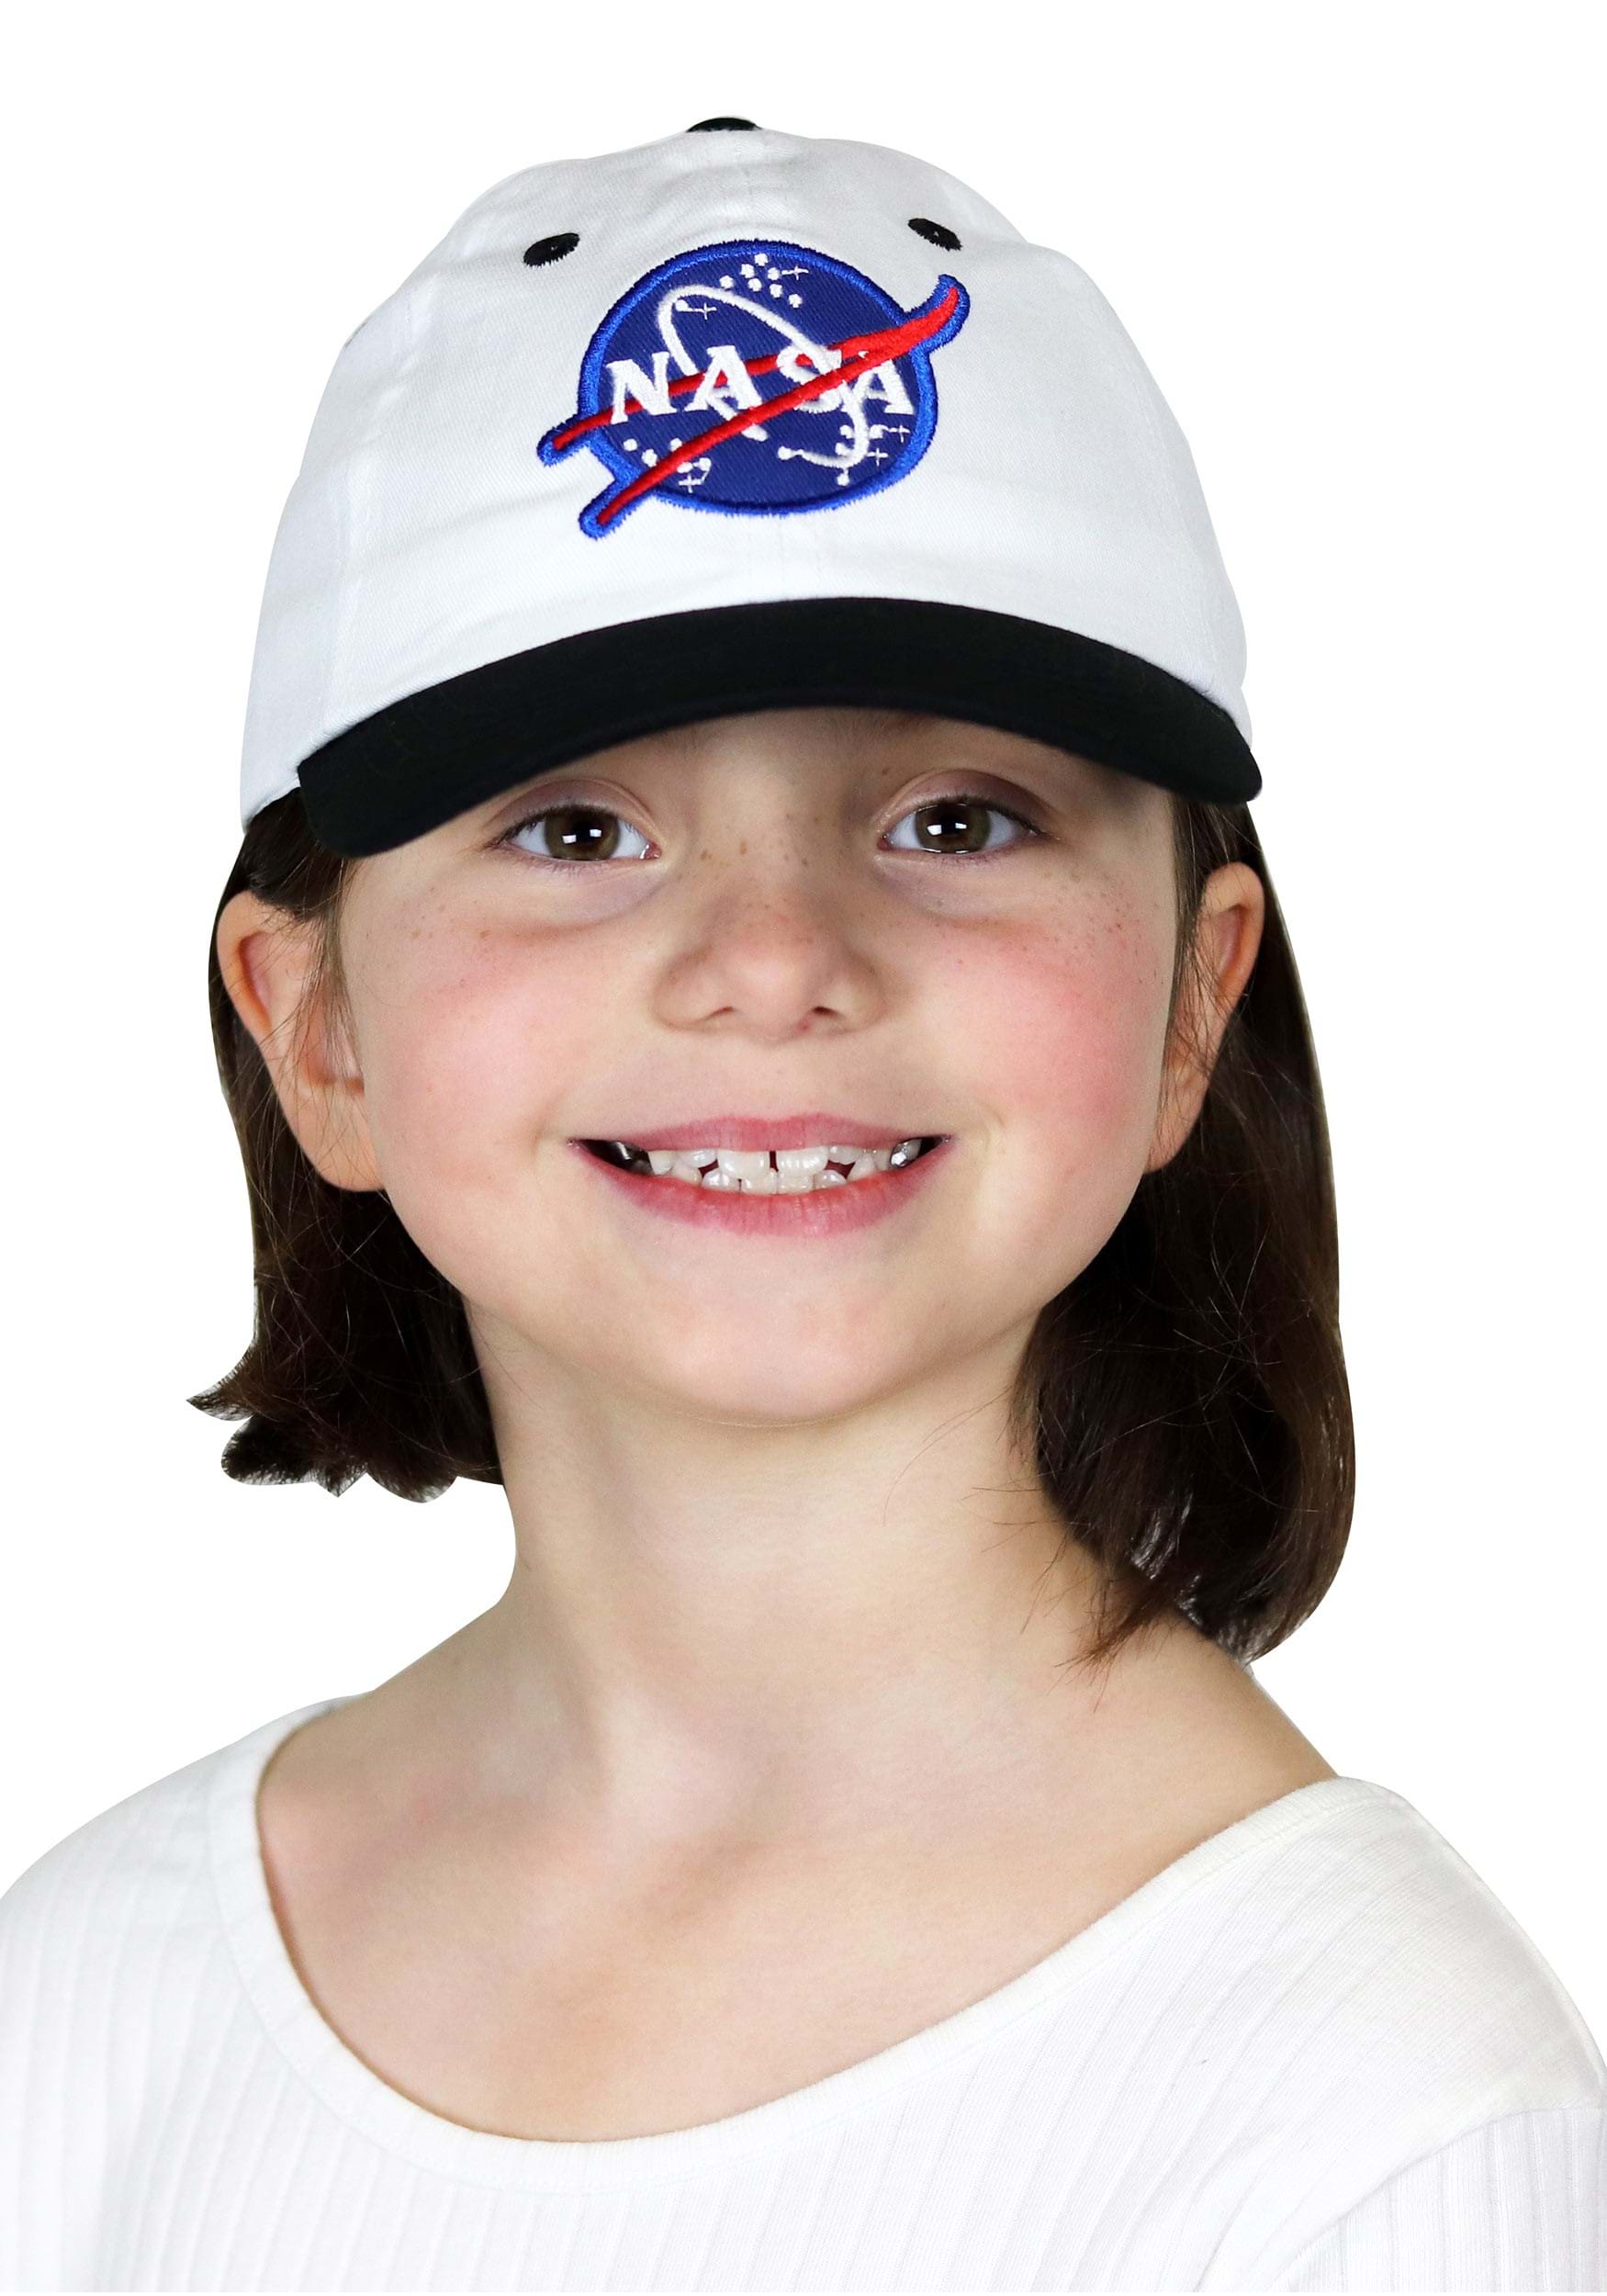 Gorra de astronauta blanca para niños Multicolor